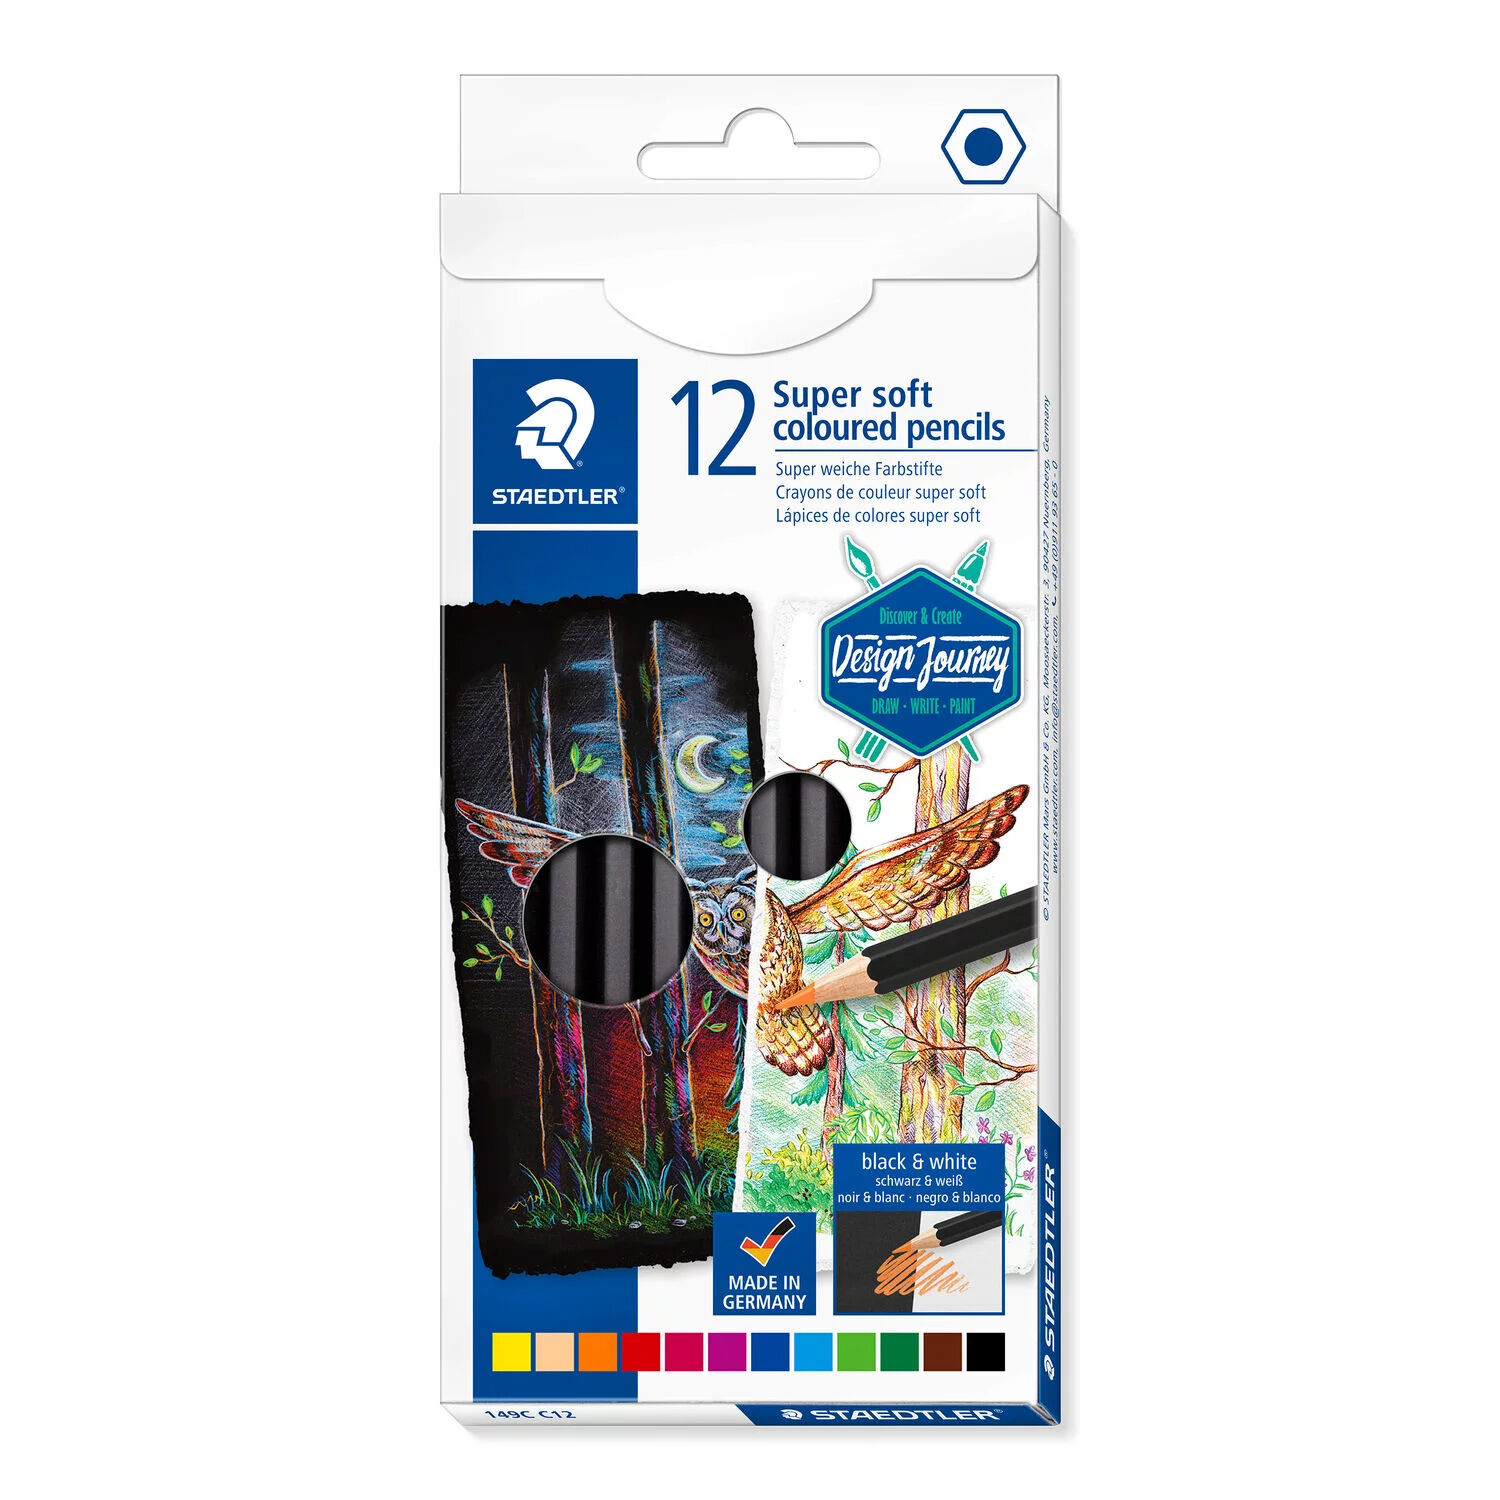 NEU Kartonetui mit 12 Farbstiften Super Soft in sortierten Farben